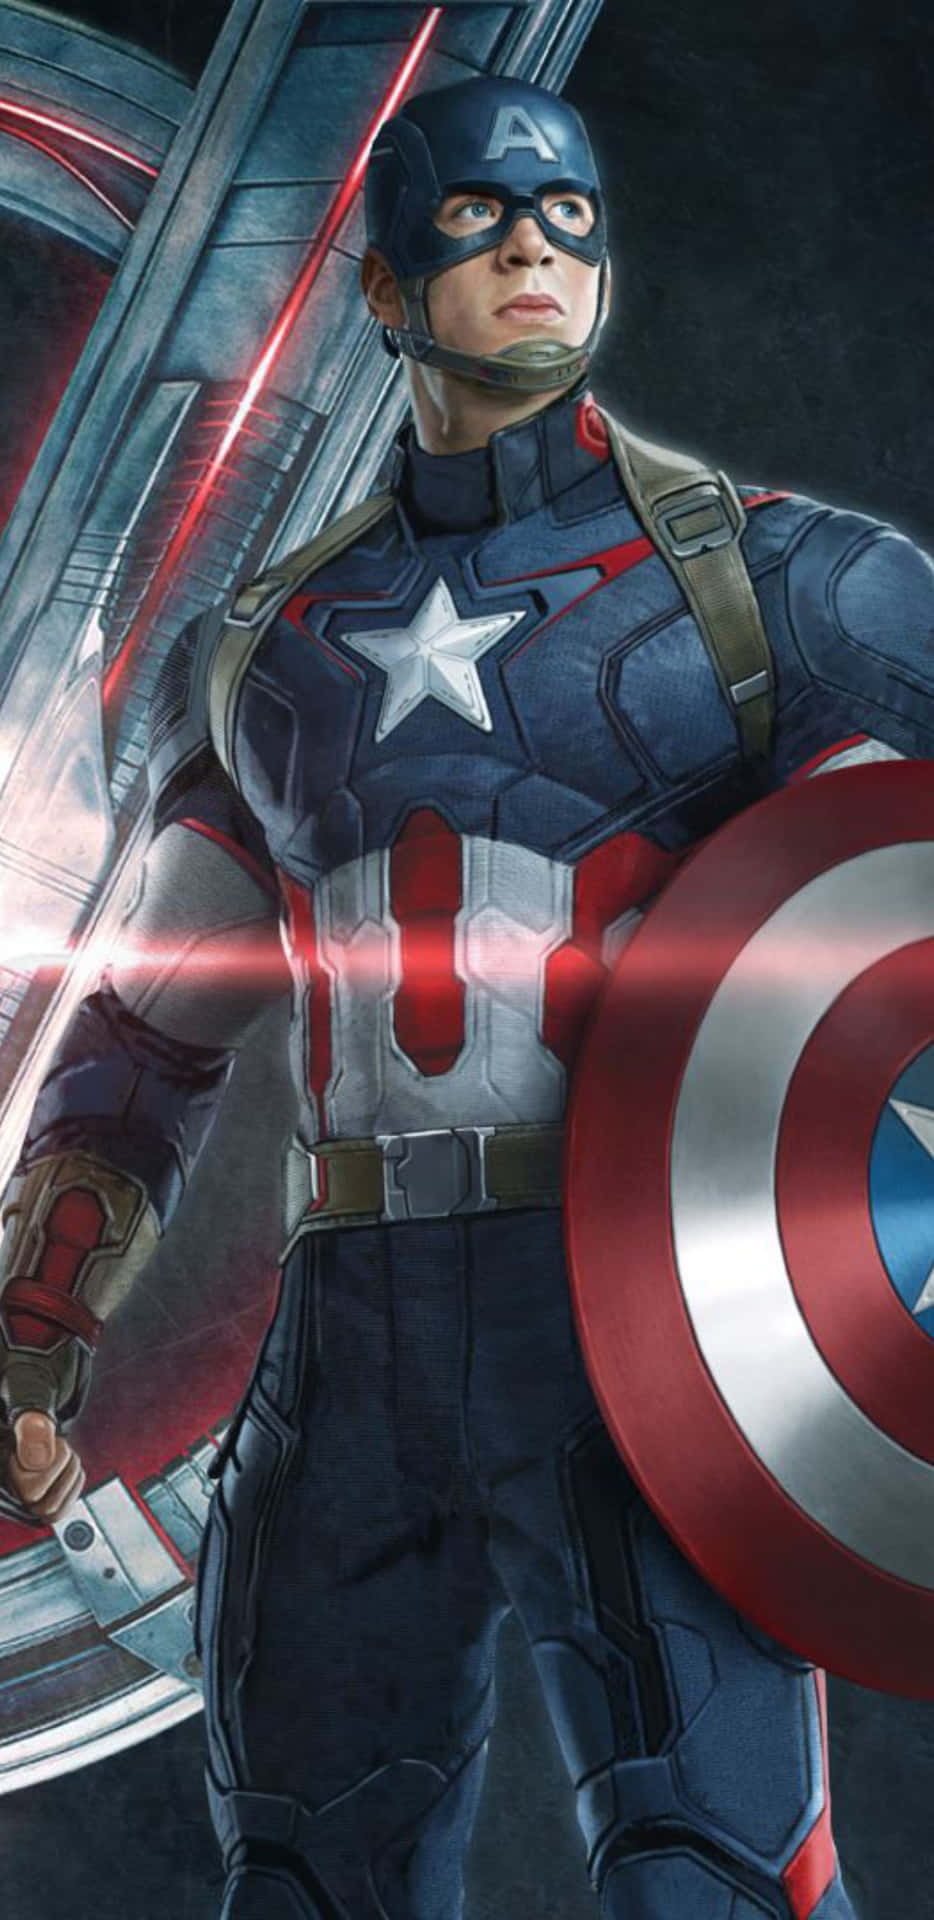 Pixel3xl Bakgrundsbild Med Captain America Från Avengers Age Of Ultron.